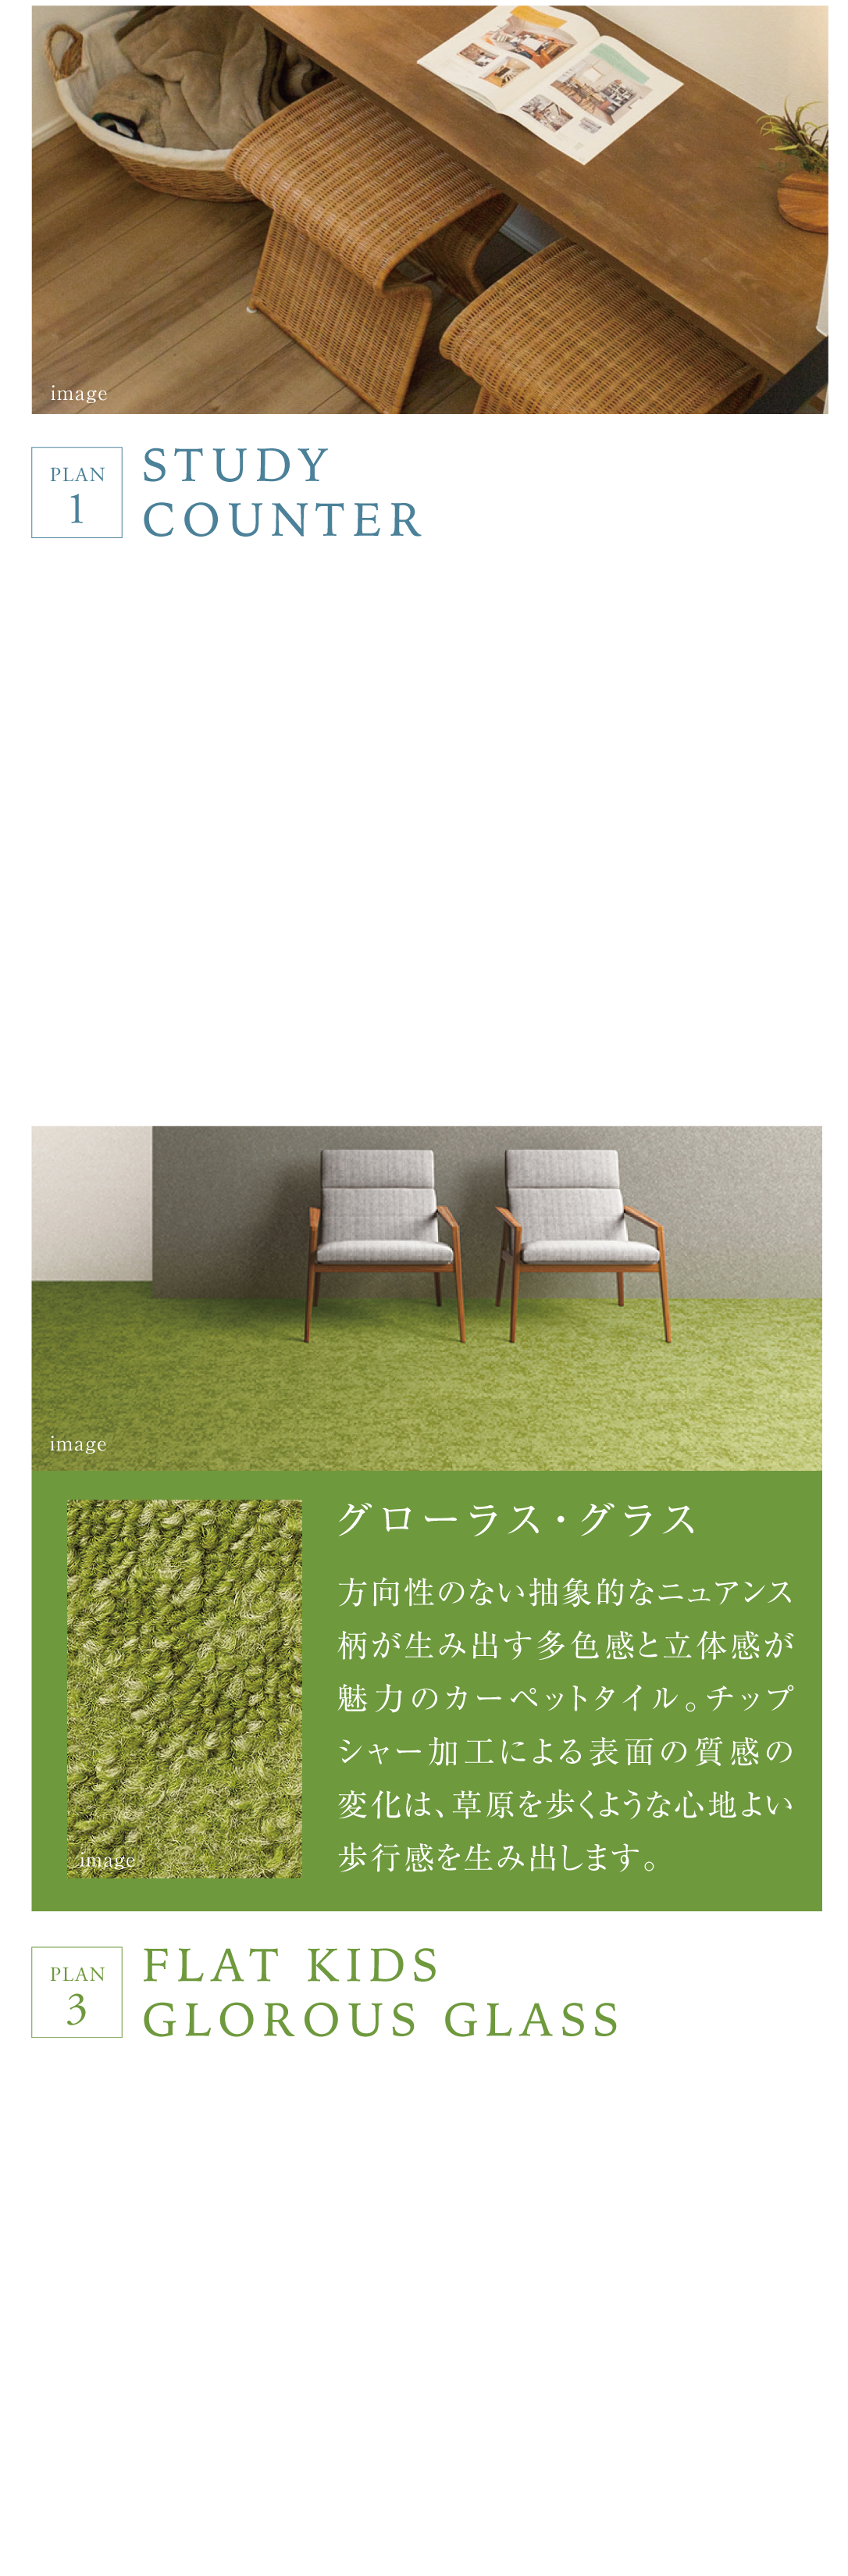 ポラスの分譲住宅 HITO-TOKIひととき草加プレミアム プランニング